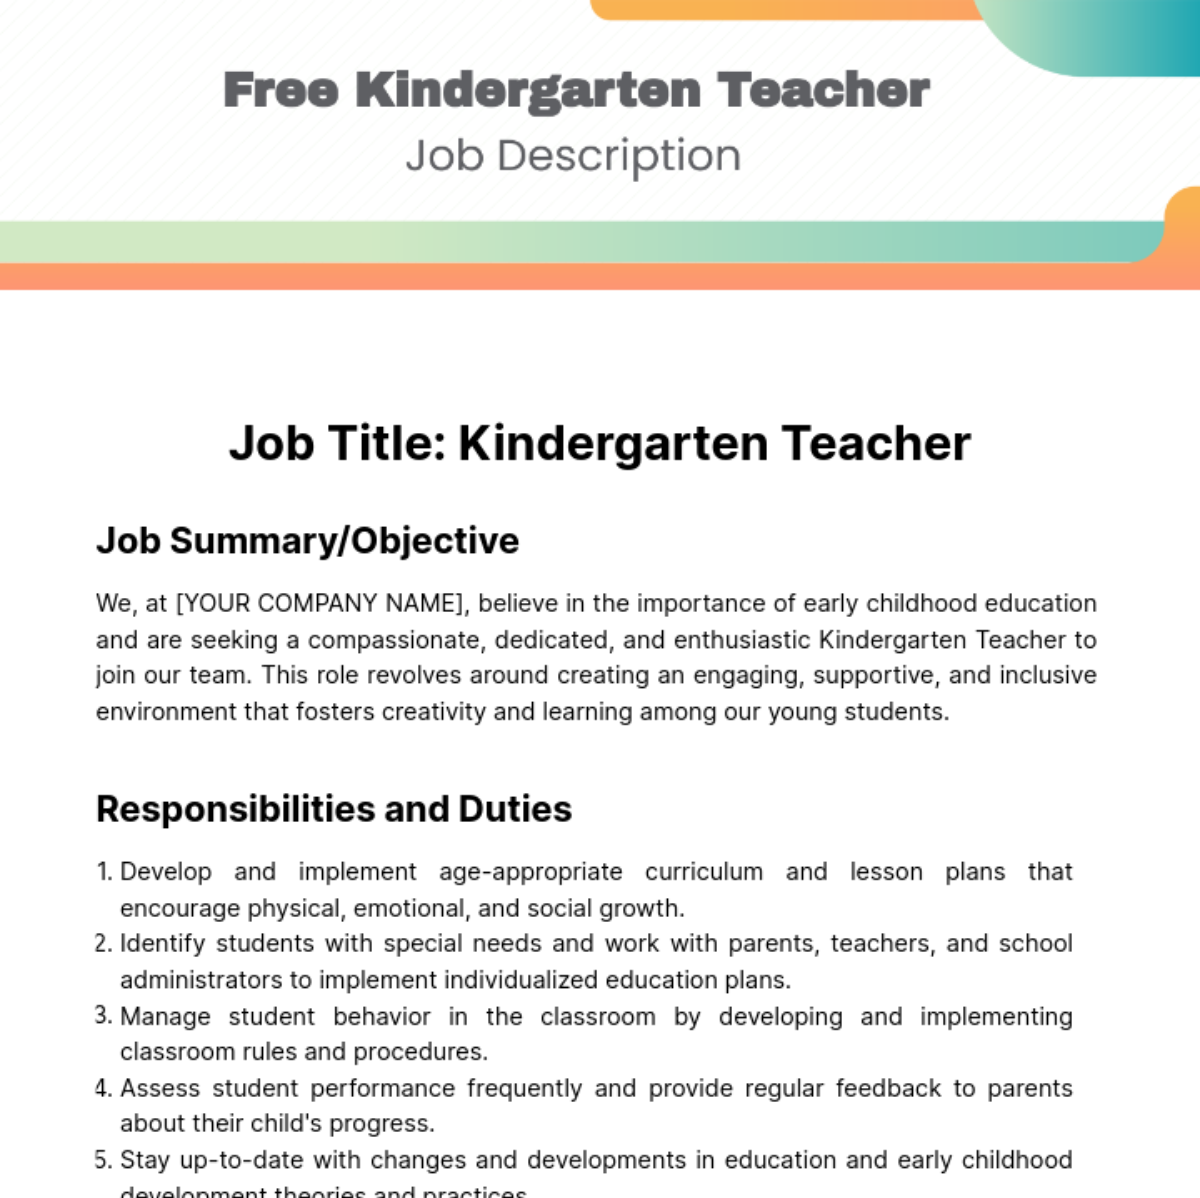 Free Kindergarten Teacher Job Description Template